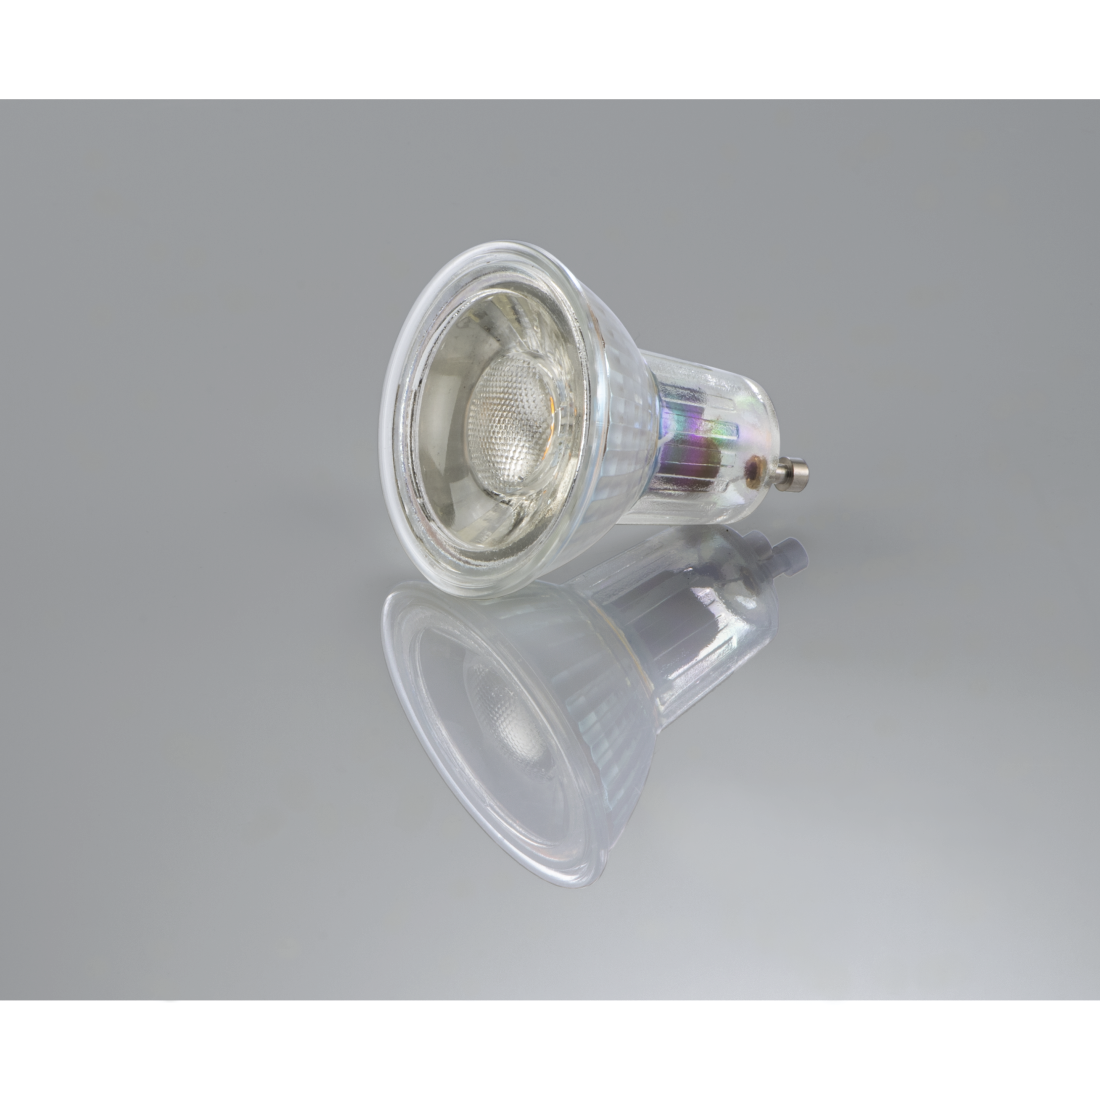 abx3 High-Res Image 3 - Xavax, Ampoule LED, GU10, 350lm rempl 50W, réfl. PAR16, blc chd, verre, intensité